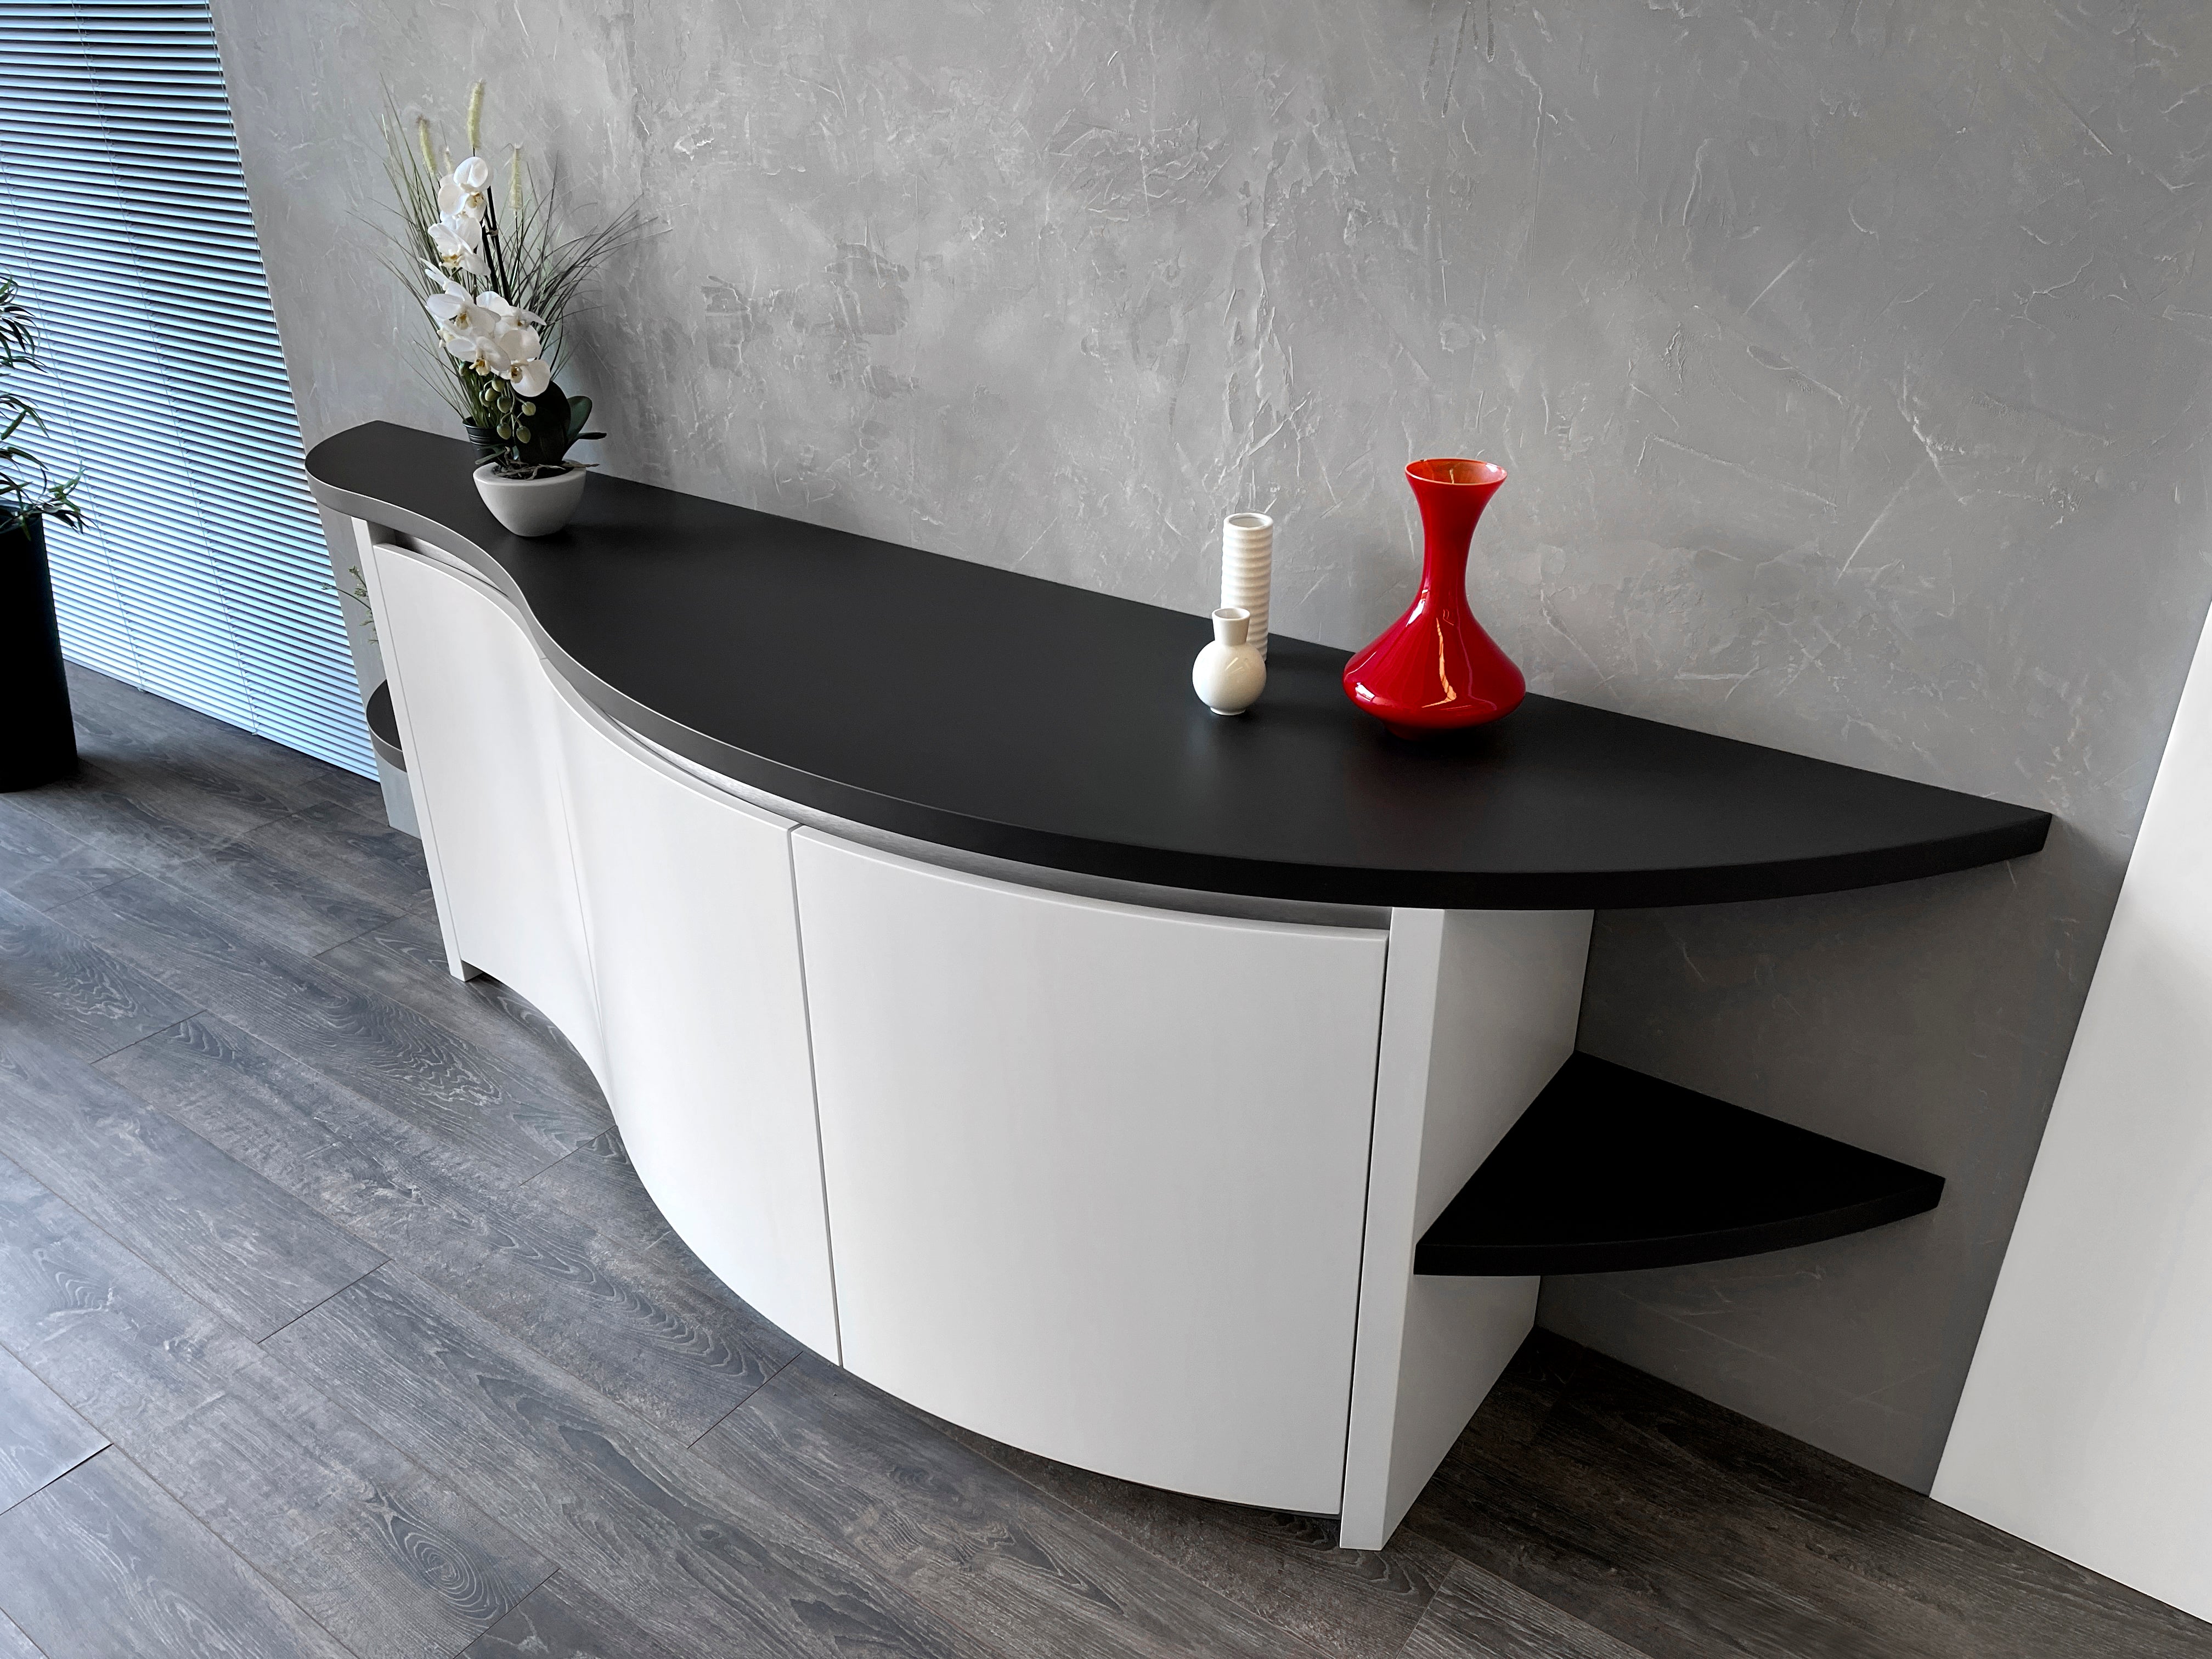 Curved Furniture - Curved modern cupboard - Black and white sideboard Curved Furniture - Curved modern cupboard - Black and white sideboard 